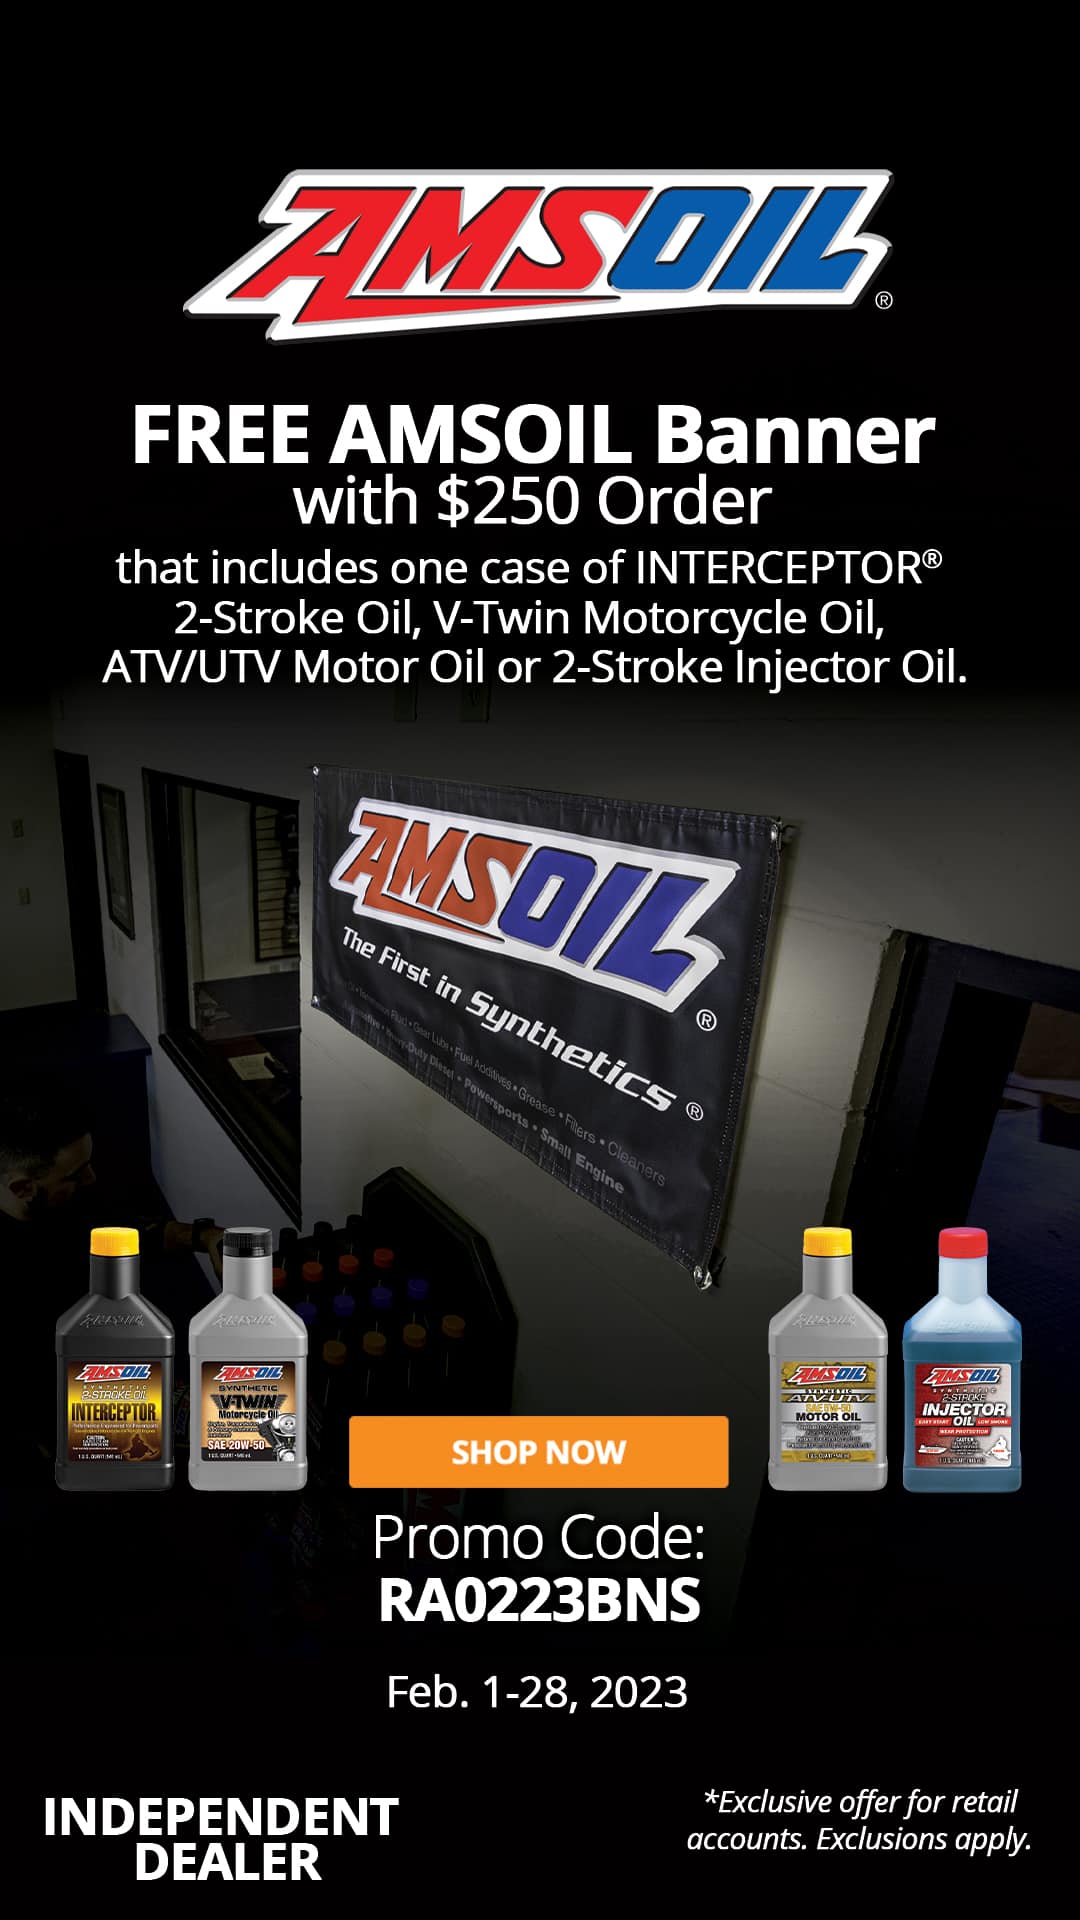 Free AMSOIL Banner with $250 that includes one case of quart bottles of AMSOIL INTERCEPTOR® 2-Stroke Oil, V-Twin Motorcycle Oil, ATV/UTV Motor Oil or 2-Stroke Injector Oil